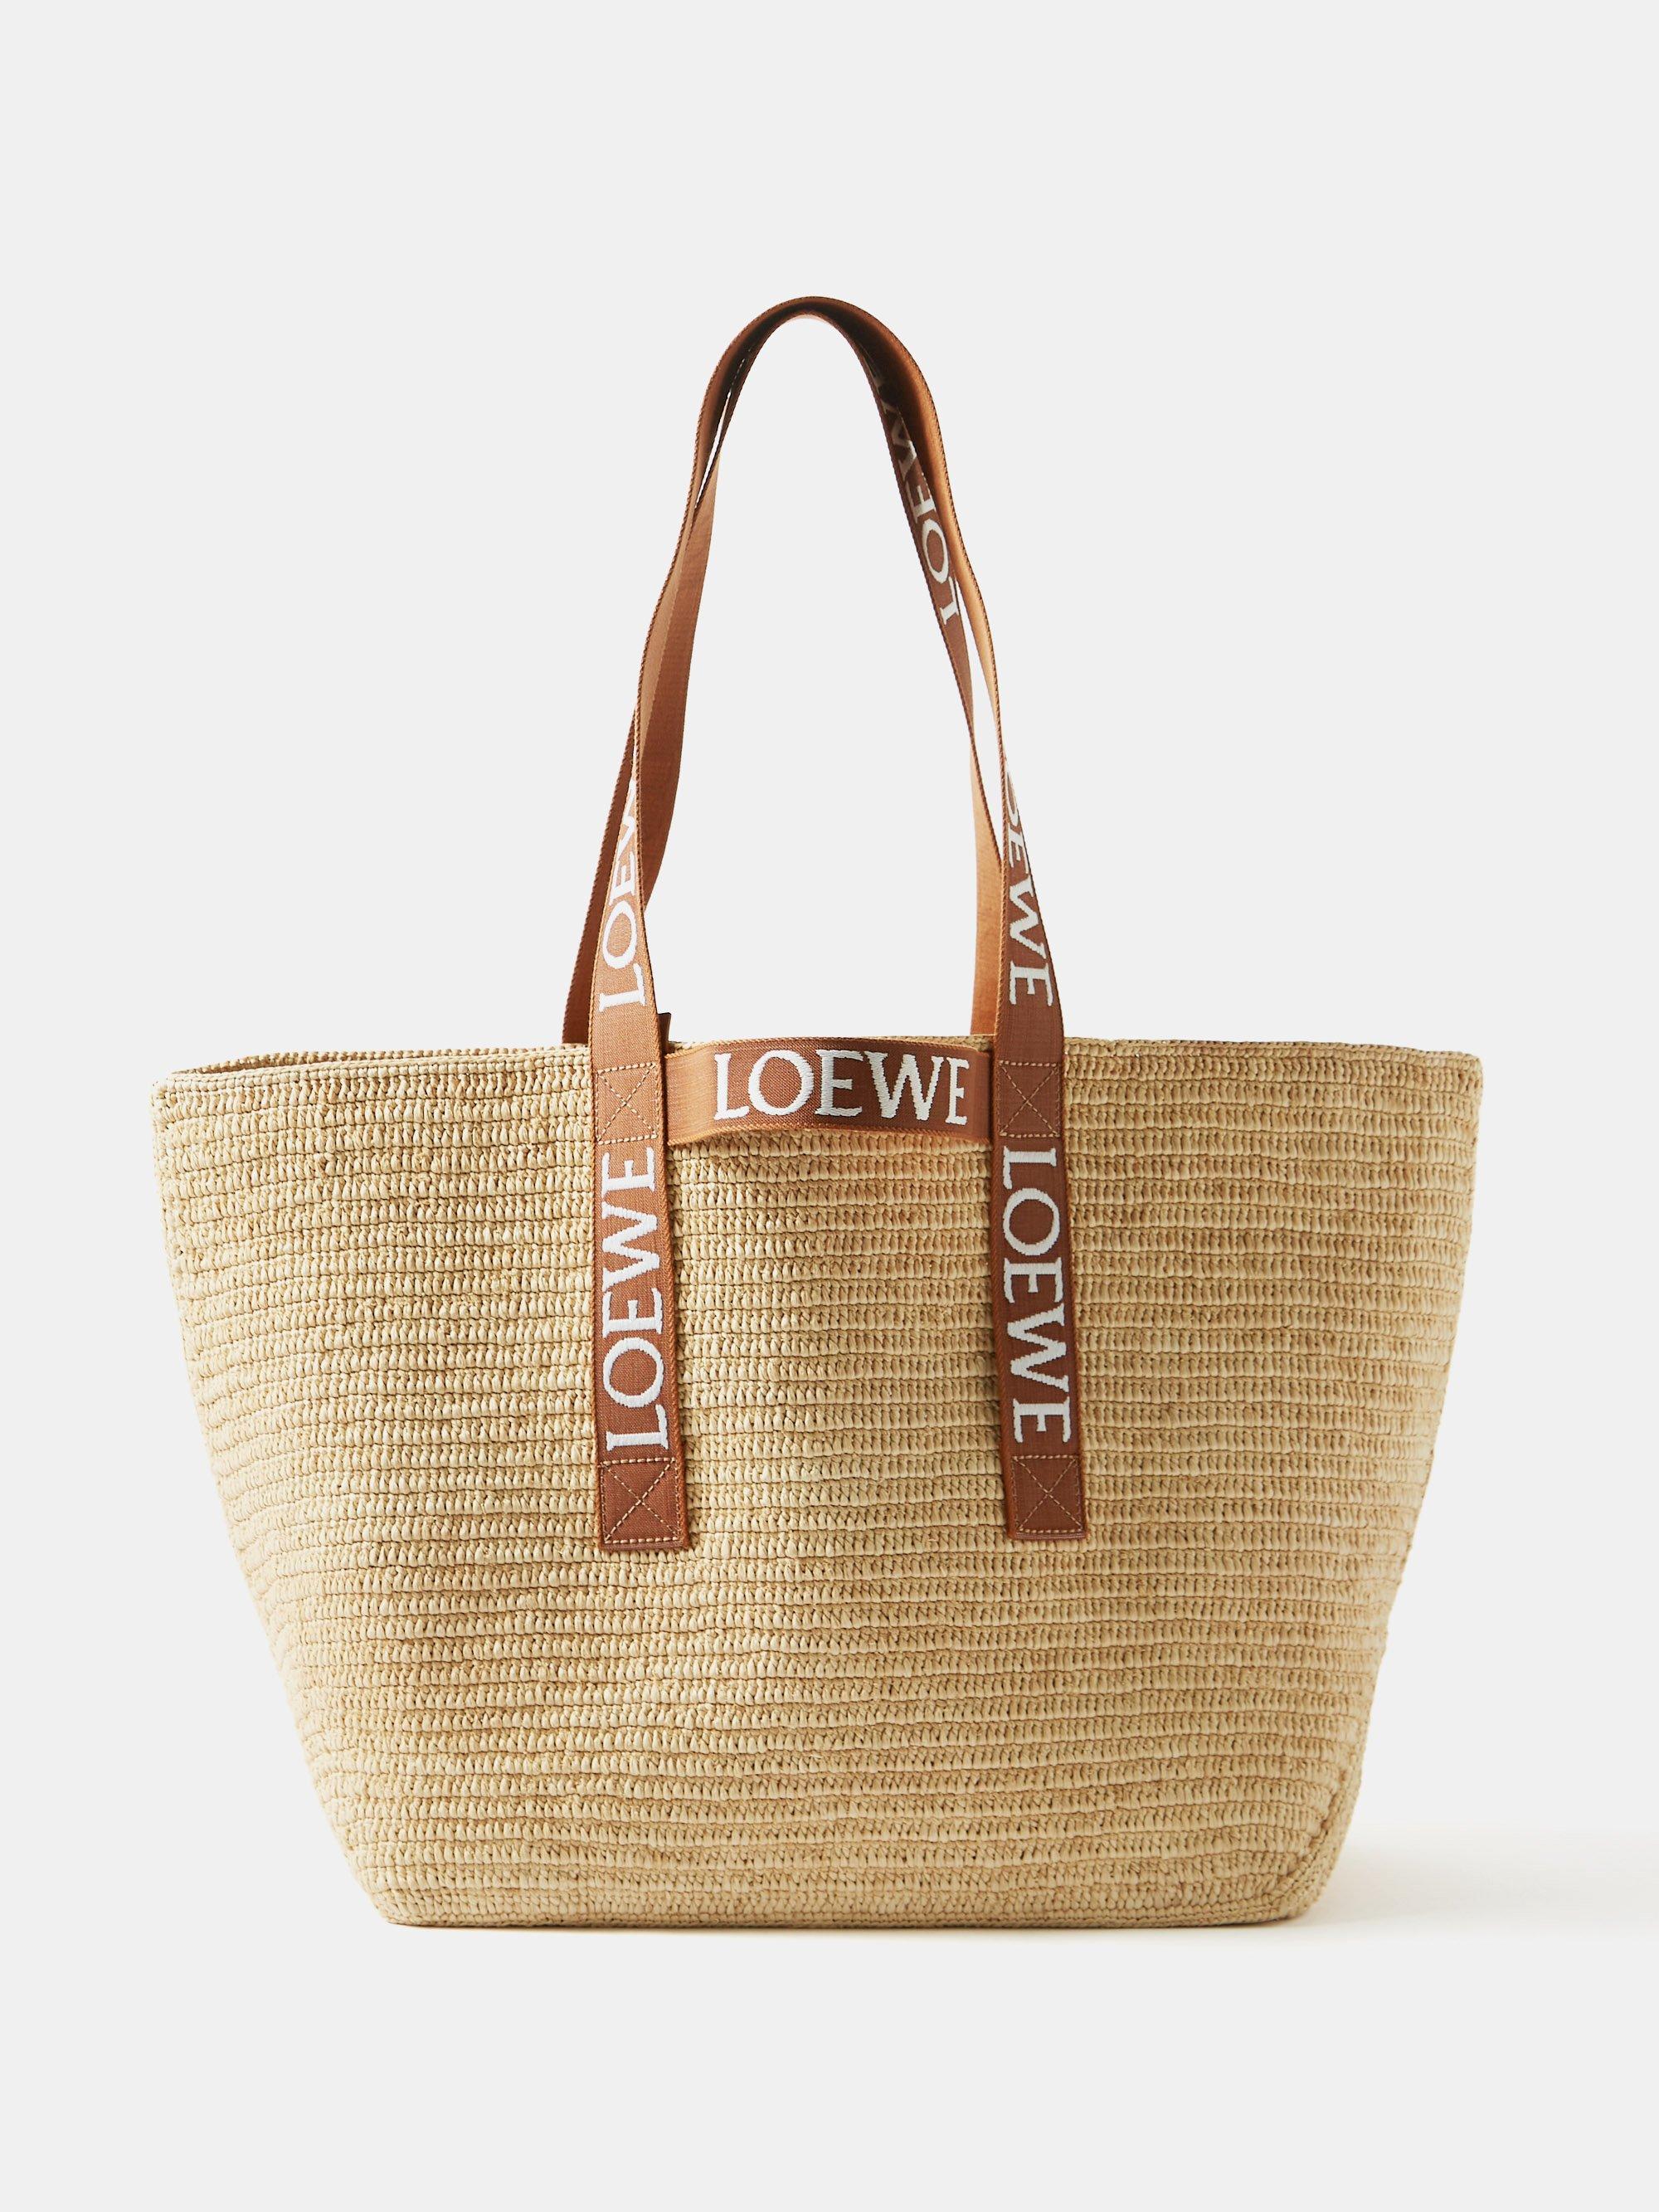 Loewe's Raffia Tote Is The Ultimate Summer Bag